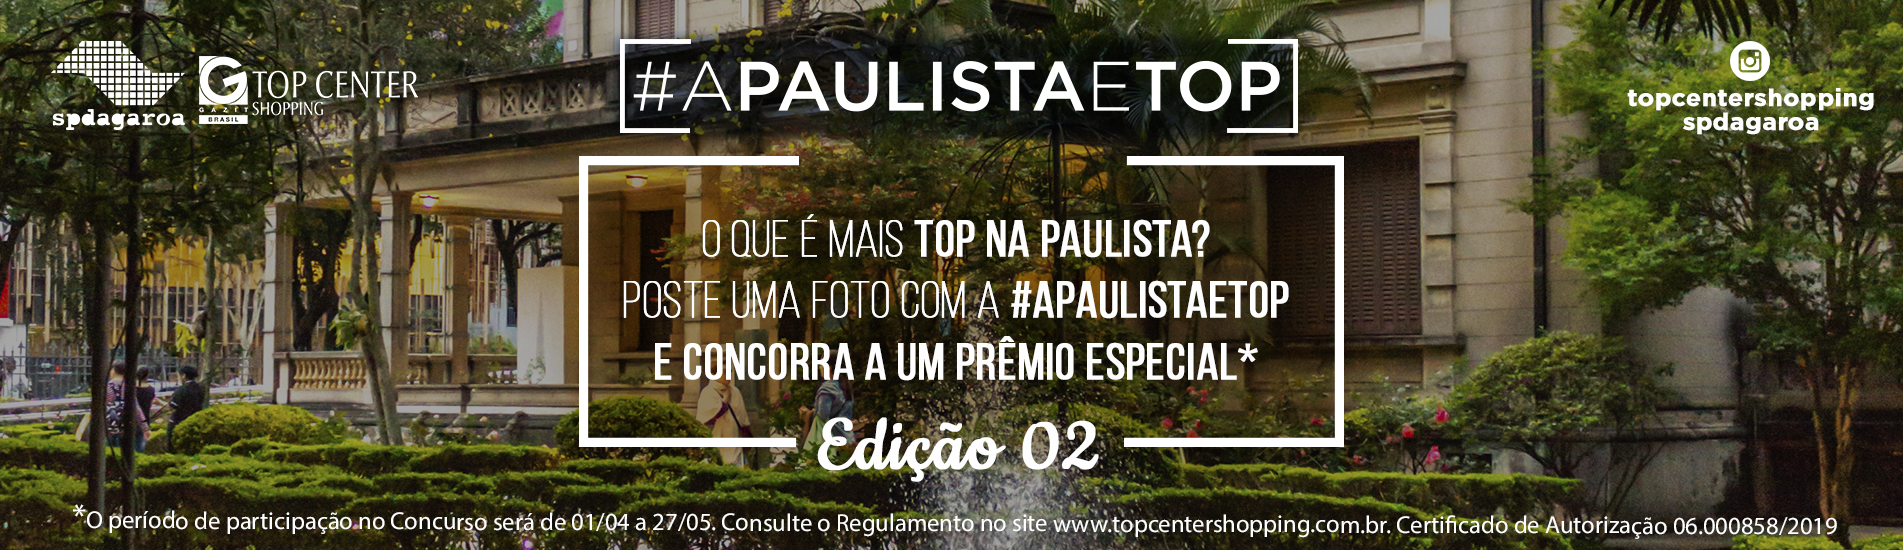 A Paulista é Top - Edição 02